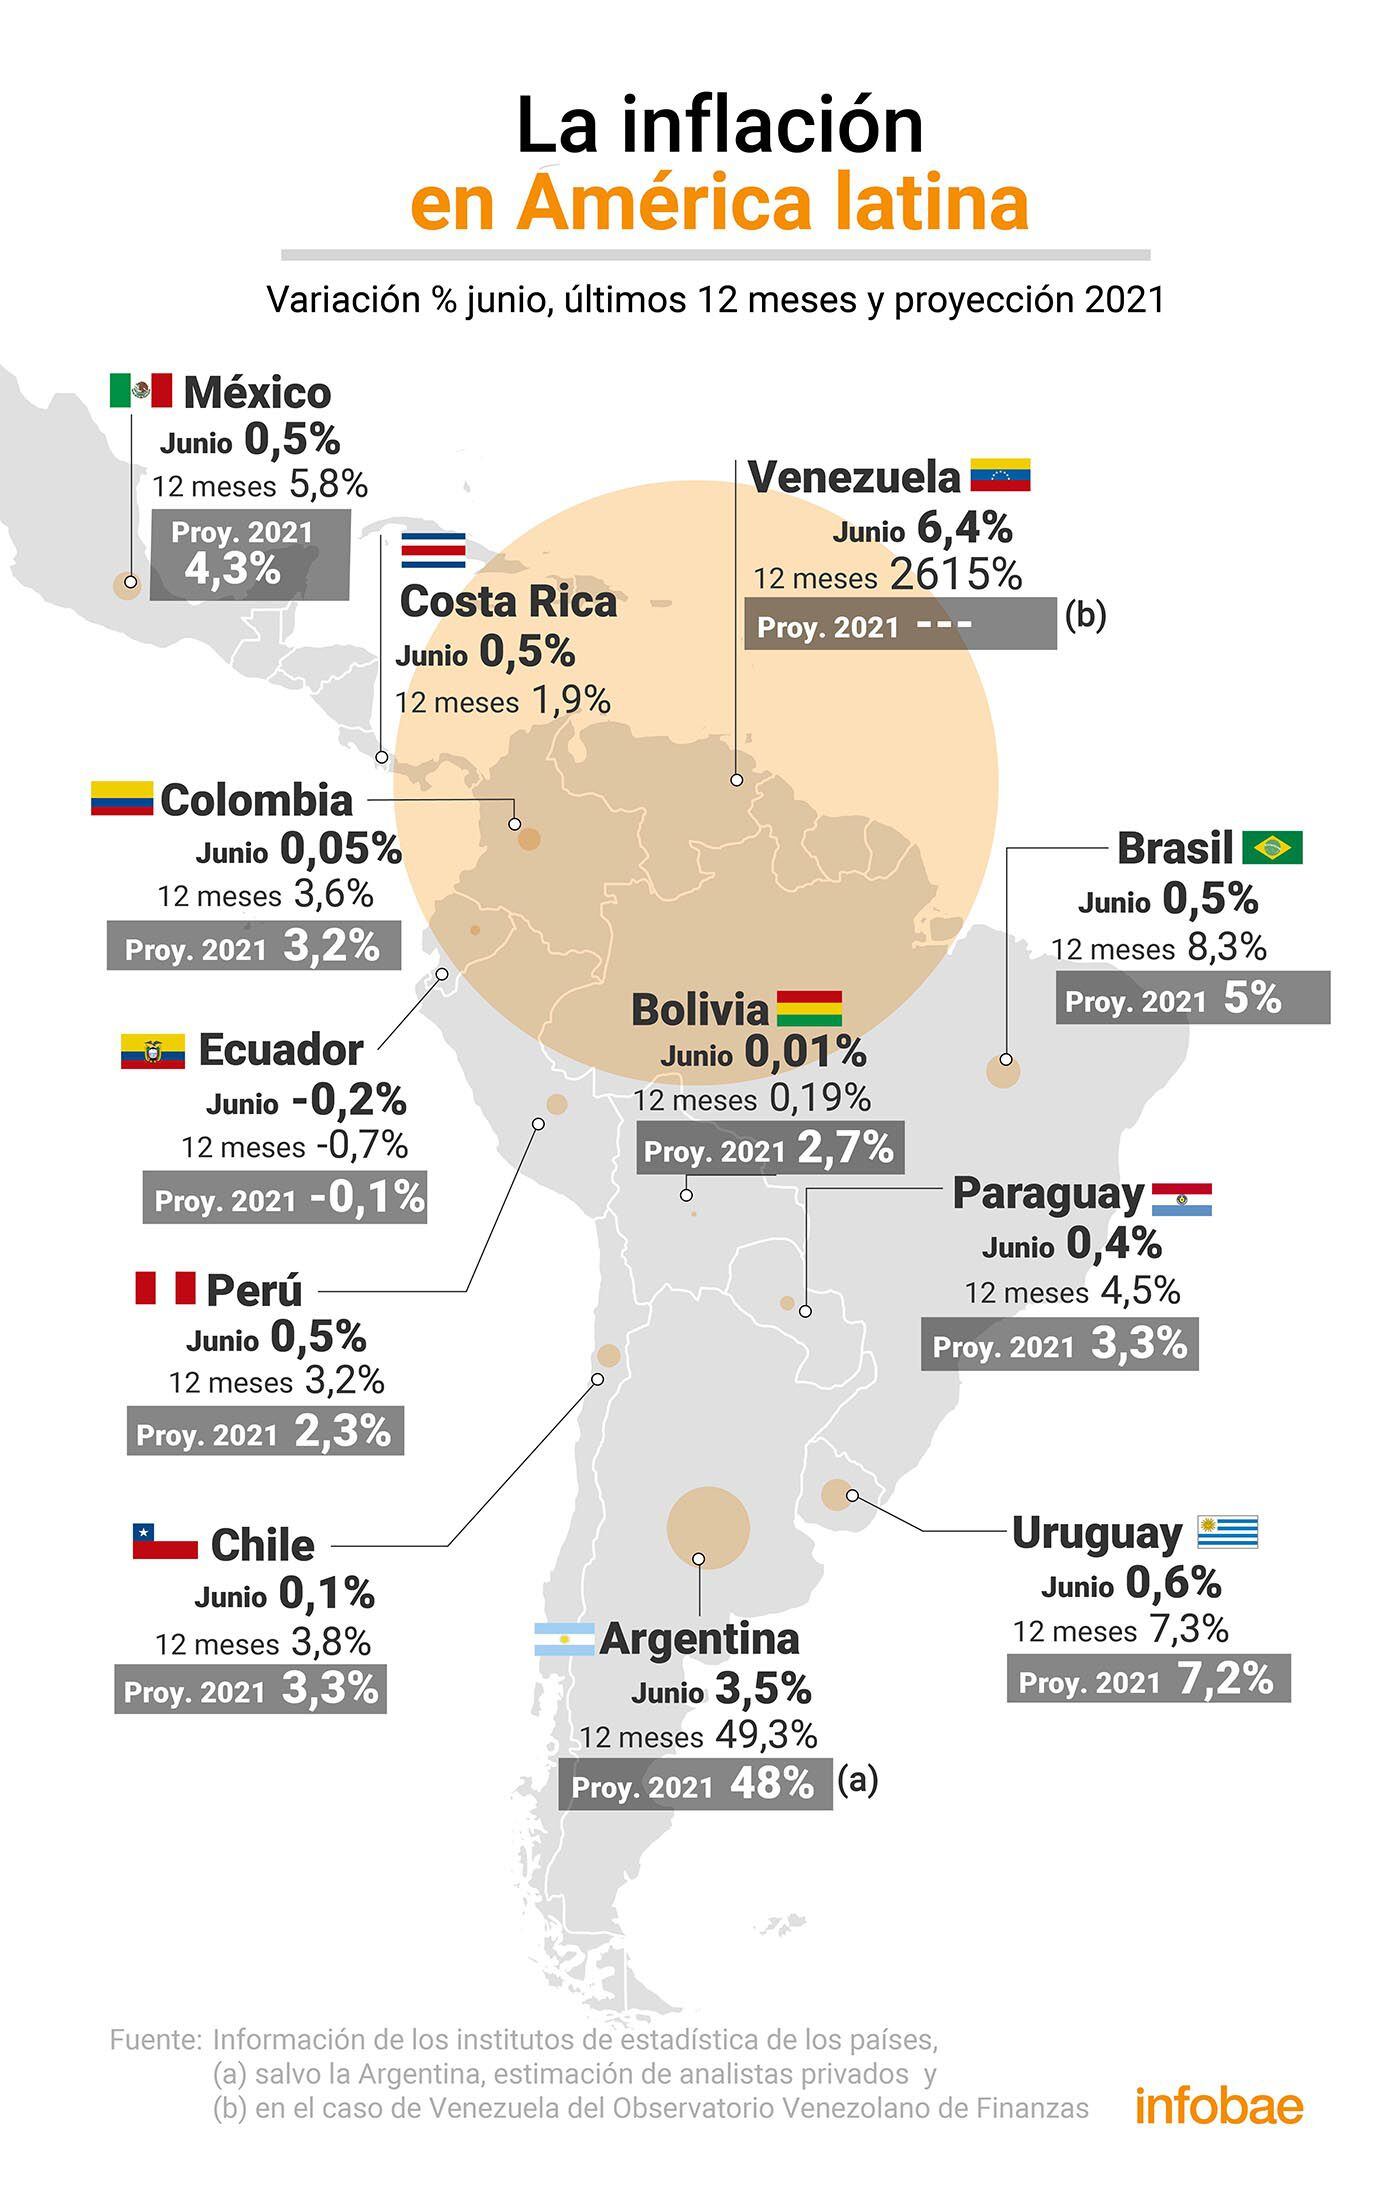 La inflación en América latina en junio (Infografía de Marcelo Regalado)